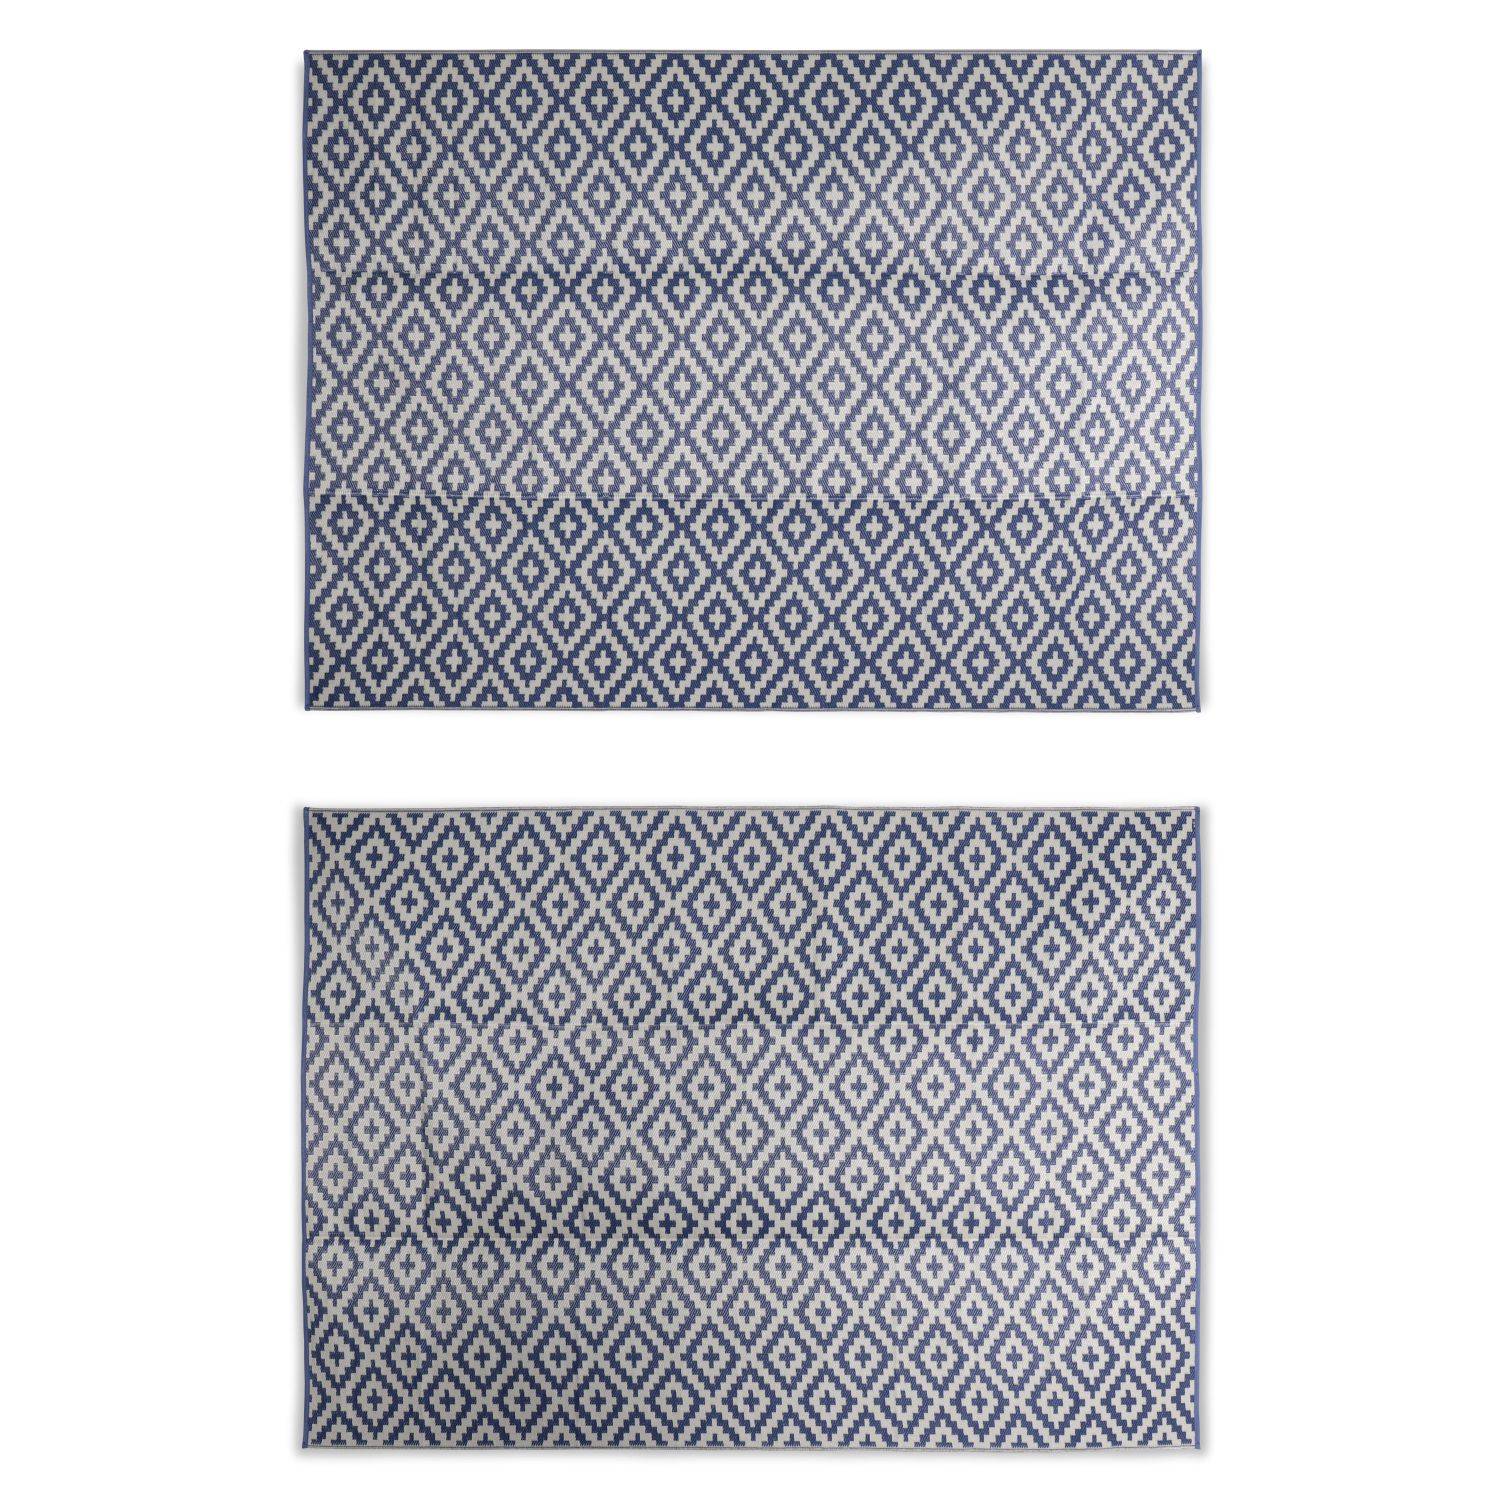 Tapis d’extérieur 270x360cm STOCKHOLM - Rectangulaire, motif losanges bleu / beige, jacquard, réversible, indoor / outdoor, Photo2